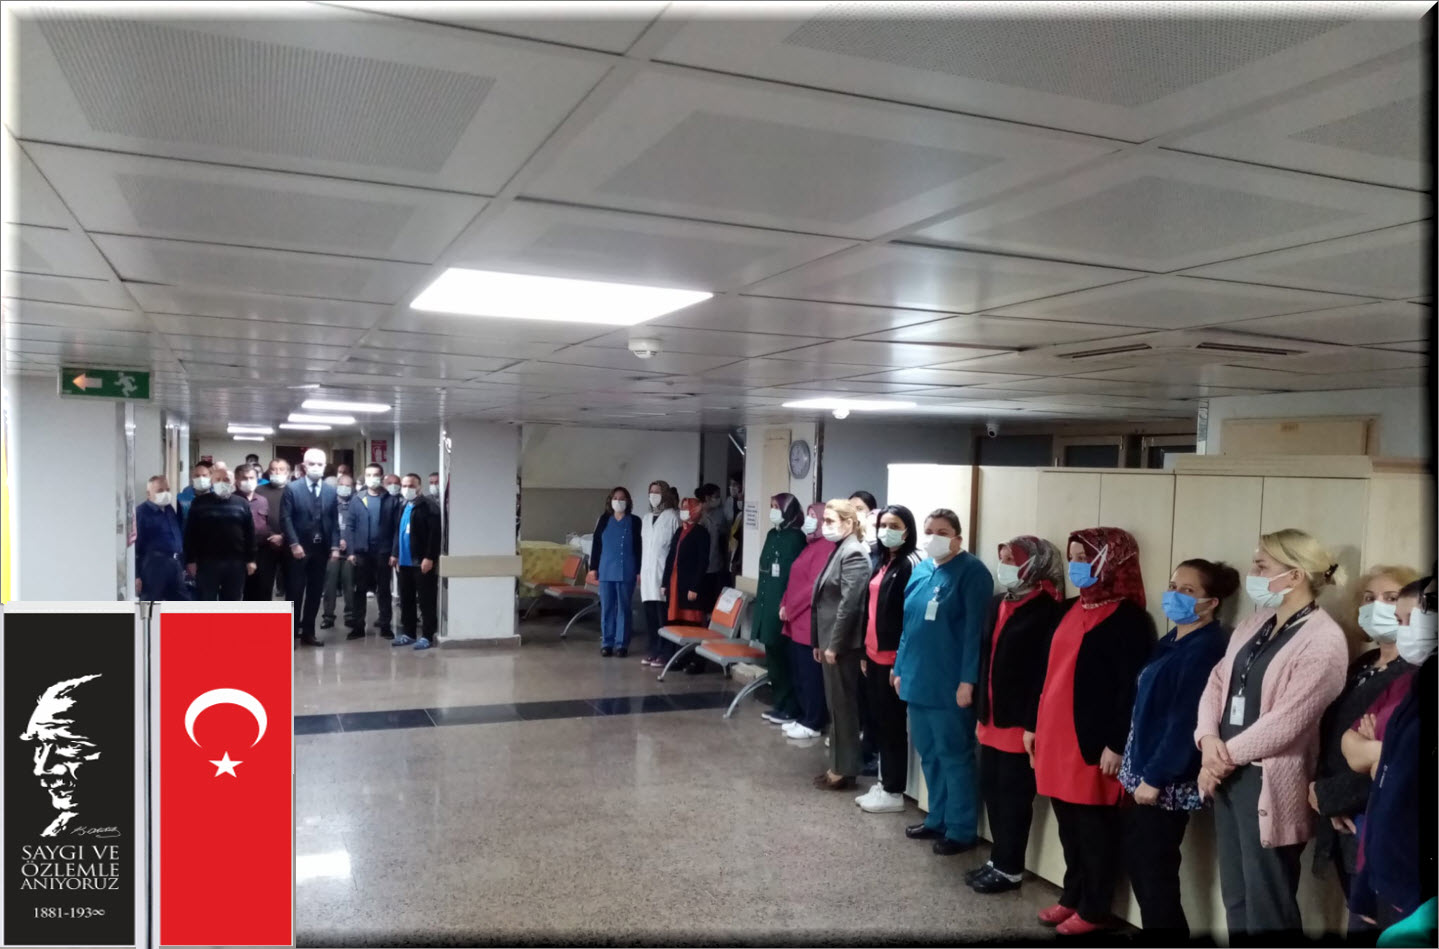 Hastanemizde 10 kasım Atatürk'ü anma töreni gerçekleştirildi.